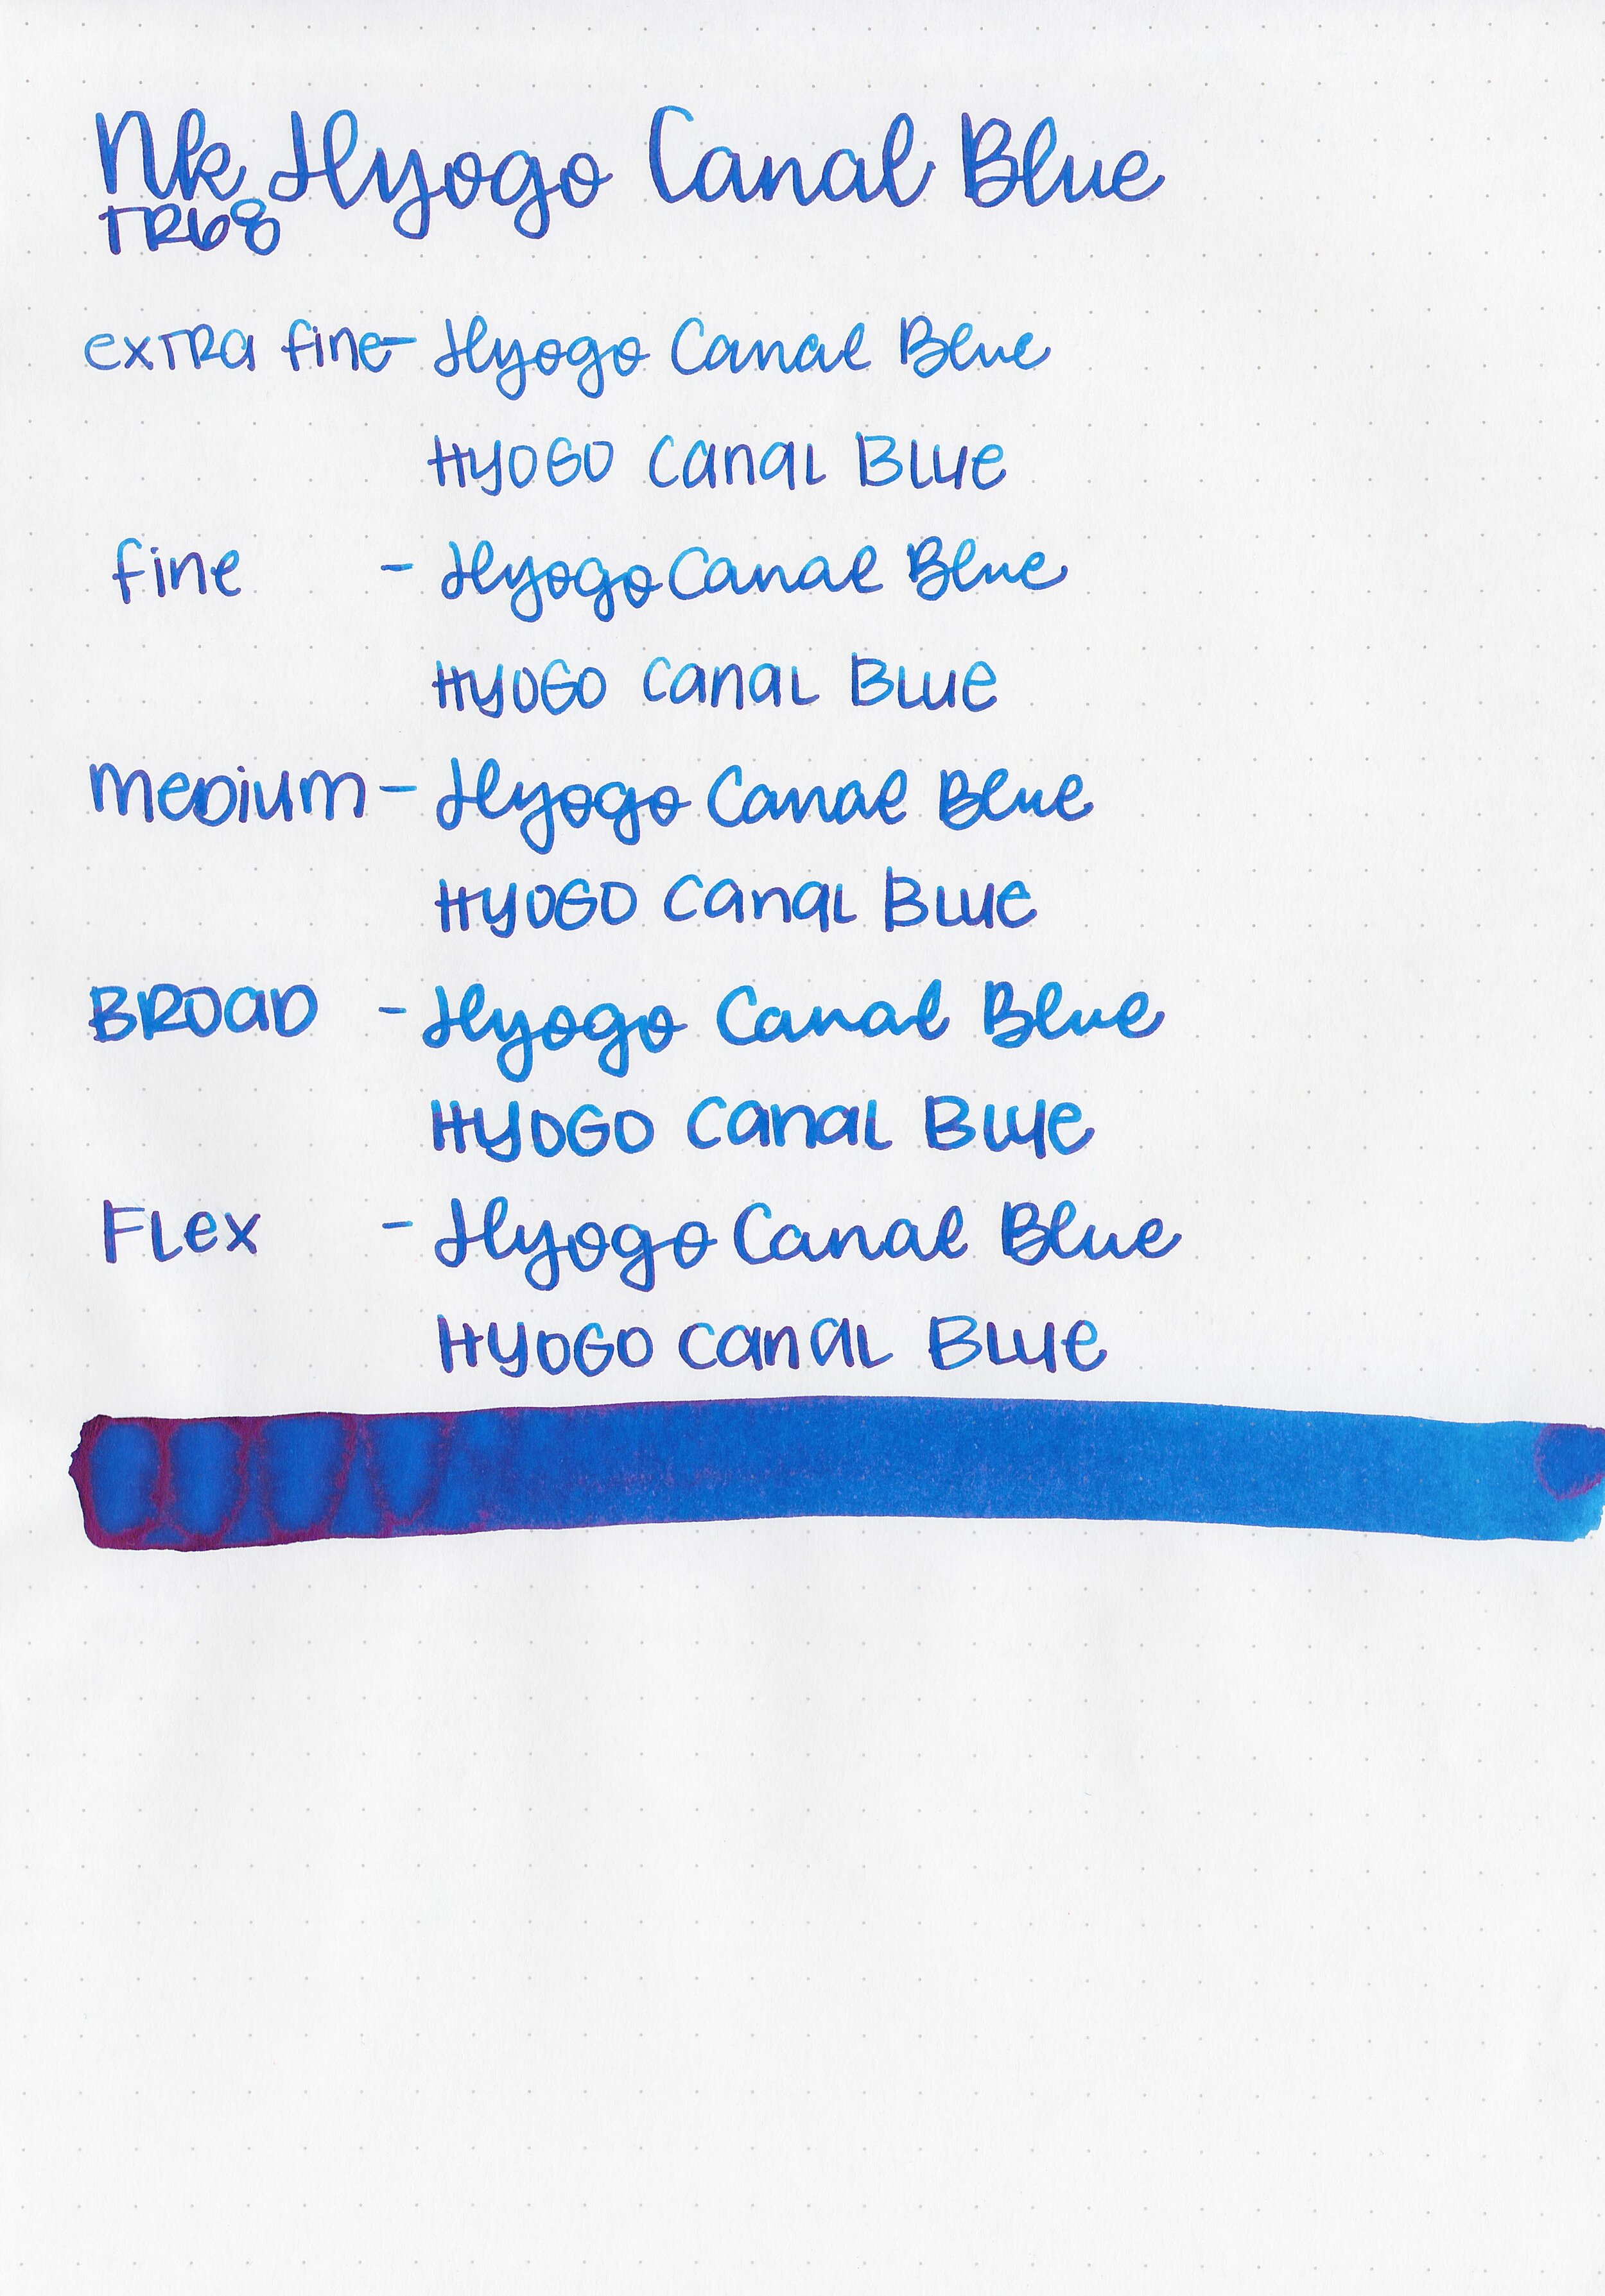 nk-hyogo-canal-blue-6.jpg